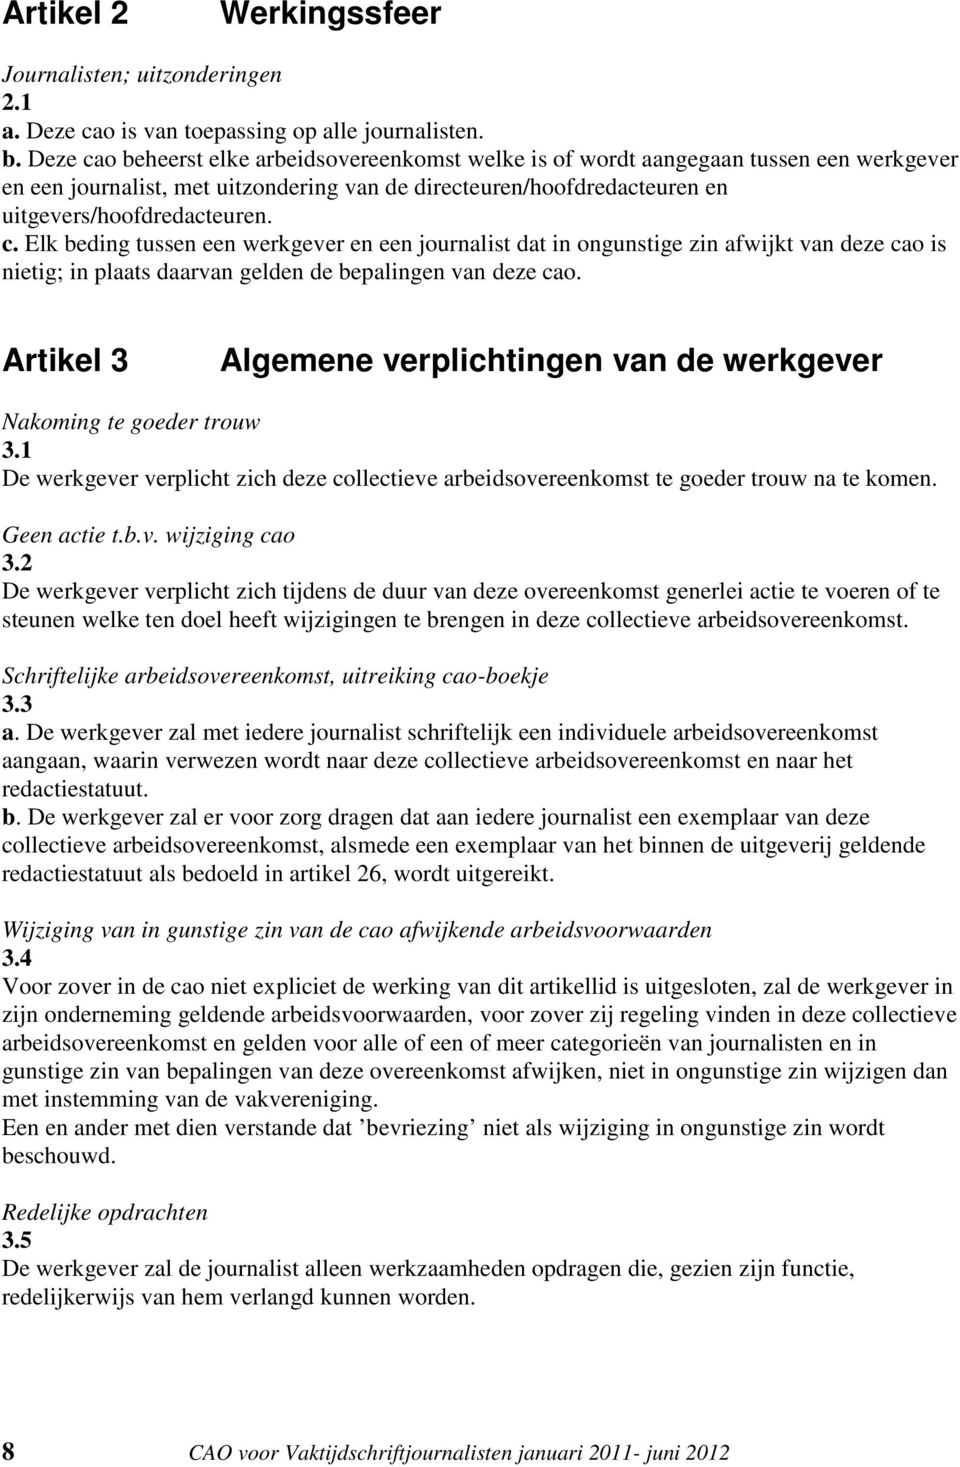 Artikel 3 Algemene verplichtingen van de werkgever Nakoming te goeder trouw 3.1 De werkgever verplicht zich deze collectieve arbeidsovereenkomst te goeder trouw na te komen. Geen actie t.b.v. wijziging cao 3.